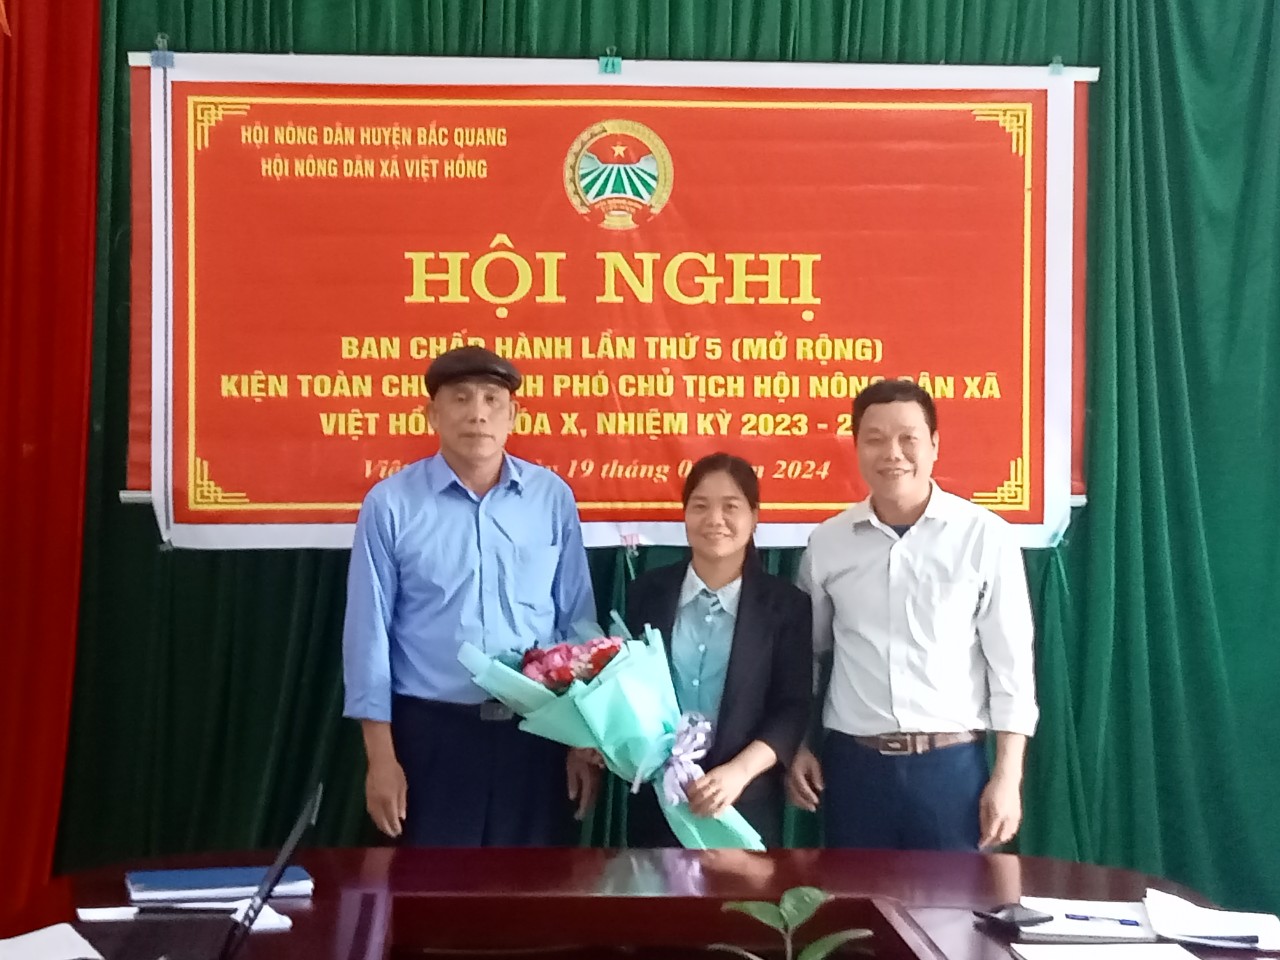 Hội Nông dân xã Việt Hồng tổ chức Hội nghị Ban Chấp hành lần thứ 5 ( Mở rộng)